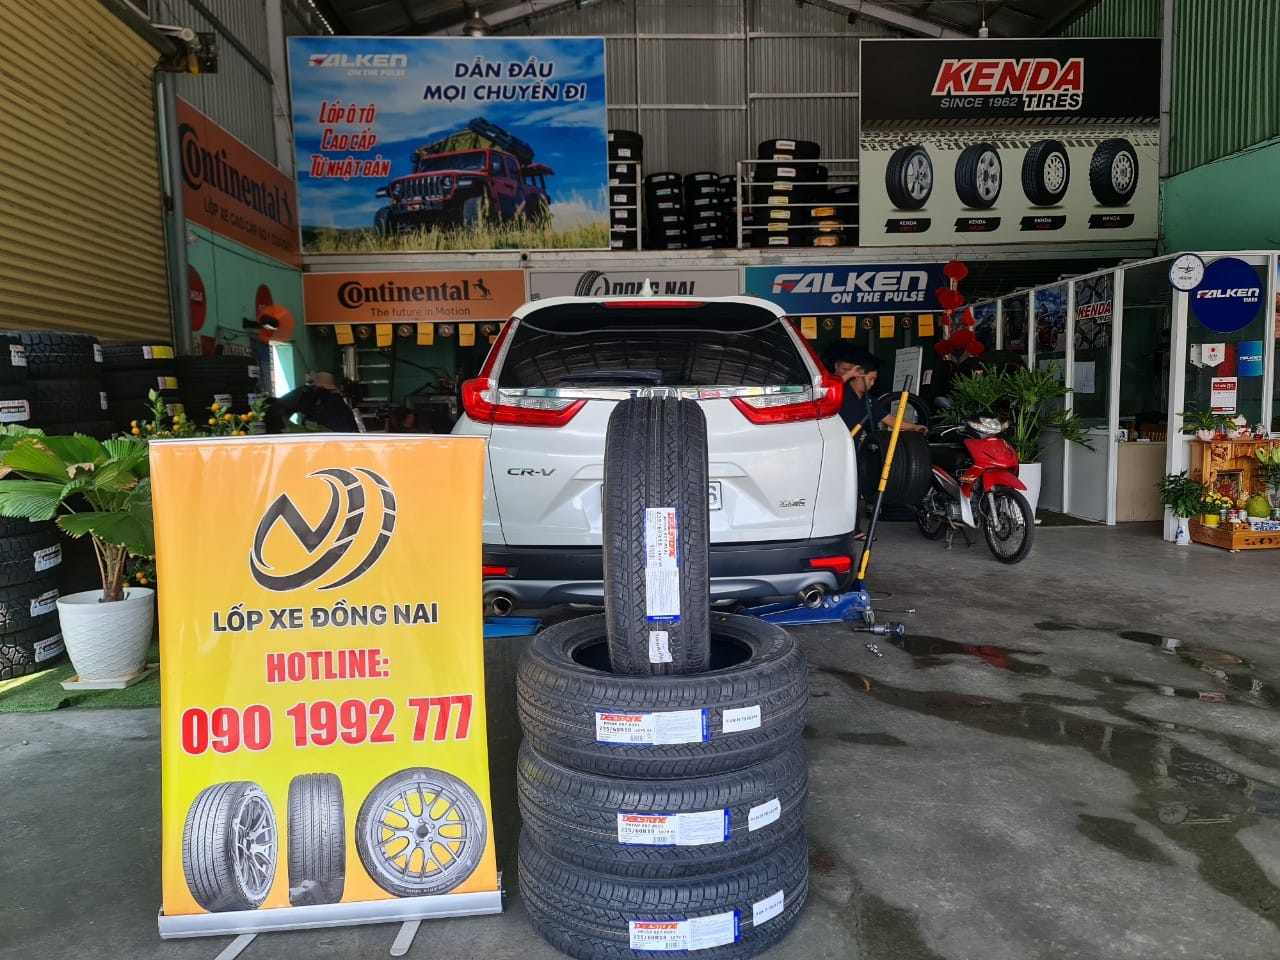 TƯ VẤN : Thay lốp xe Honda CRV ở Trảng Bom, Đồng Nai.